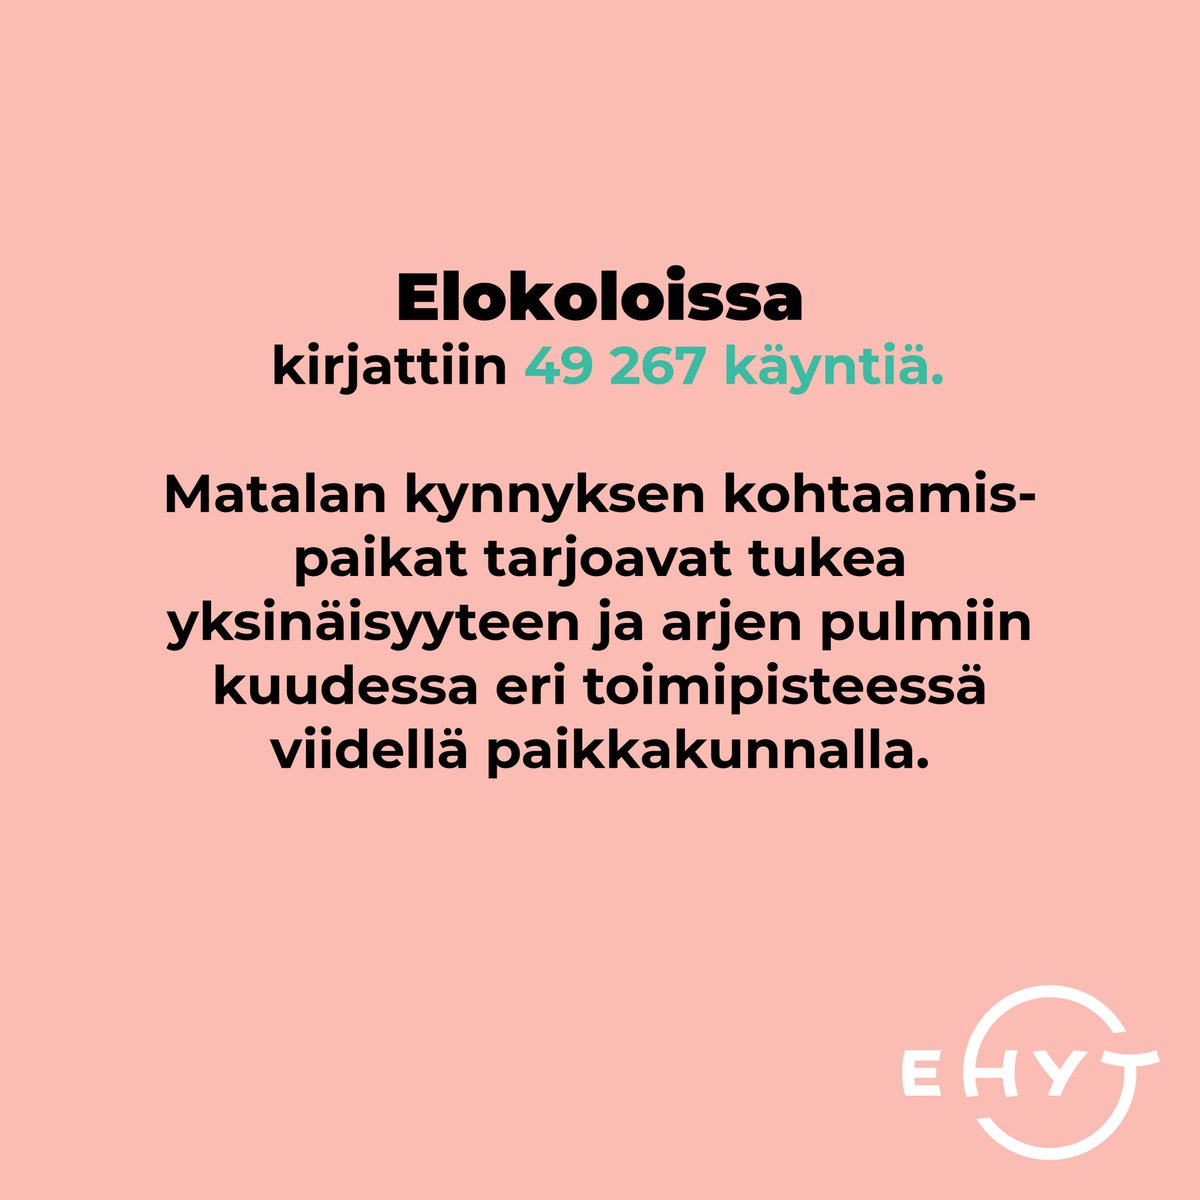 Kurkista EHYTin vuoteen 2023! Päihde- tai rahapeliongelma koskettaa yli kahta miljoonaa suomalaista. Ennaltaehkäisy on tehokkain tapa torjua ongelmia yhteiskunnassamme. Siksi ehkäisevää päihdetyötä tarvitaan kaikkialla: oppilaitoksissa, työpaikoilla ja perheissä. #kehysriihi